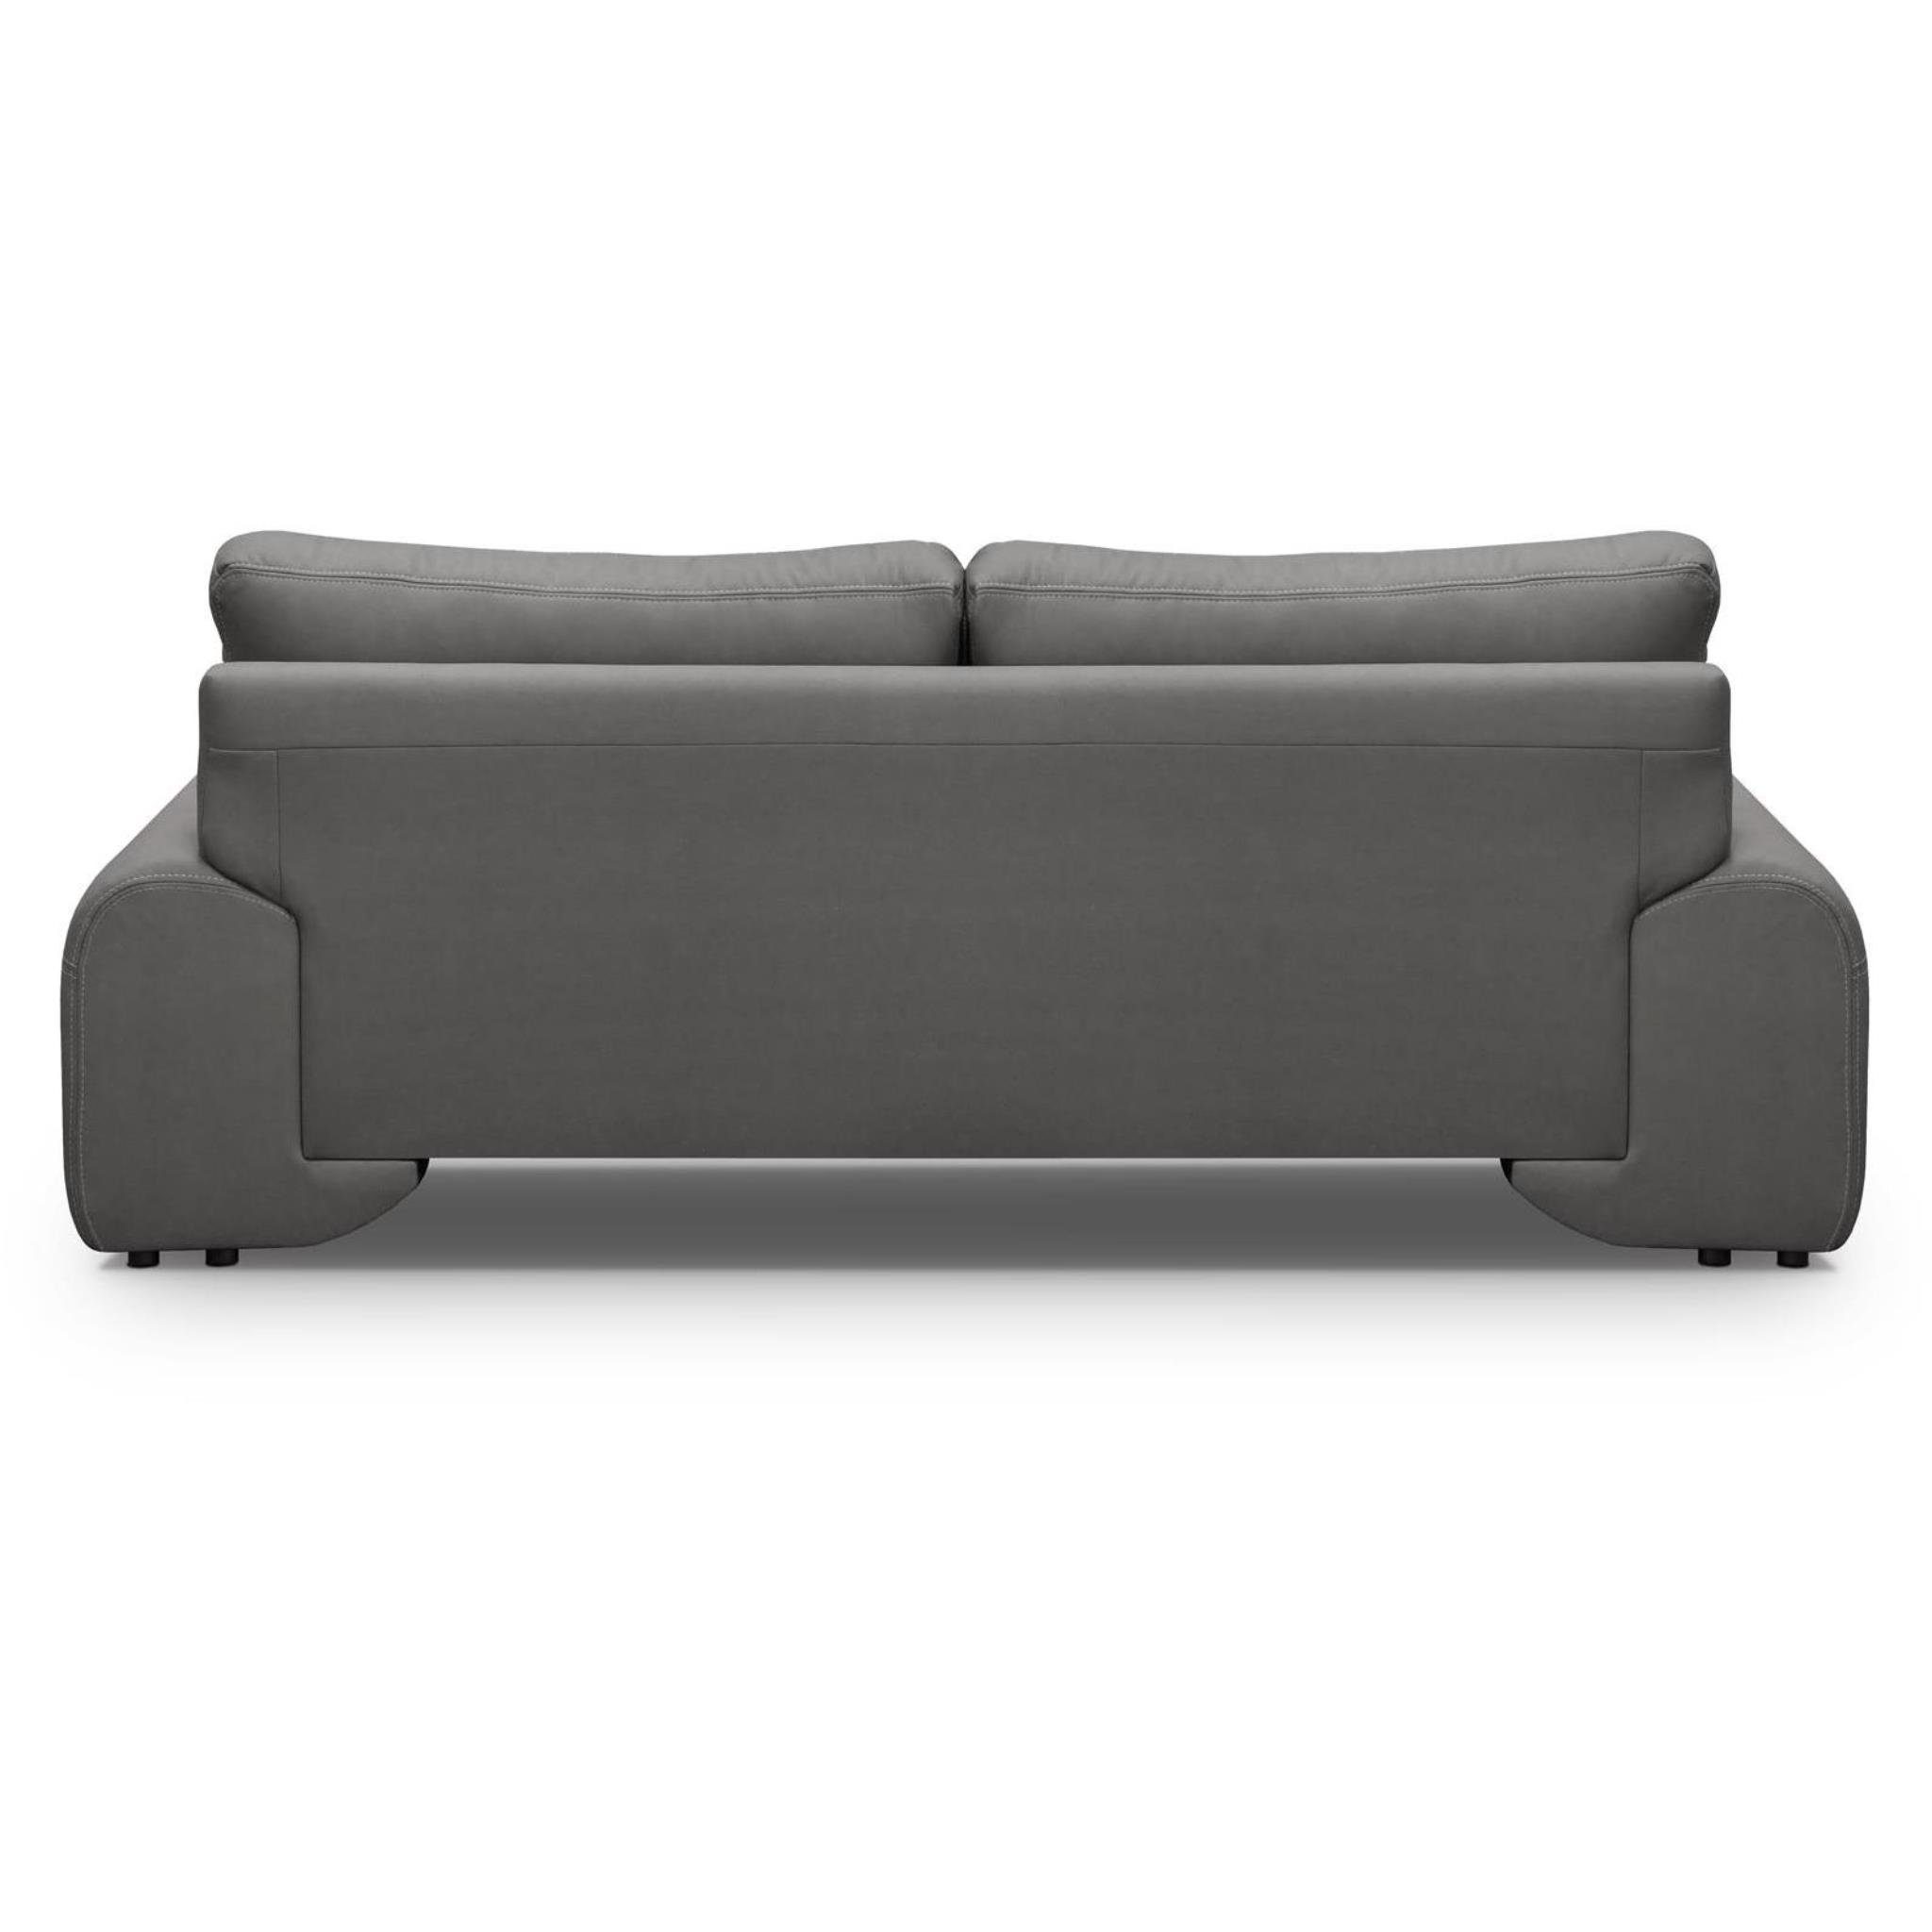 Beautysofa 3-Sitzer Maxime lux, 3-Sitzer 88) Sofa modernes Grau dekorativen Wellenunterfederung, im mit (vega Dreisitzer mit Design, Nähten, Kunstleder